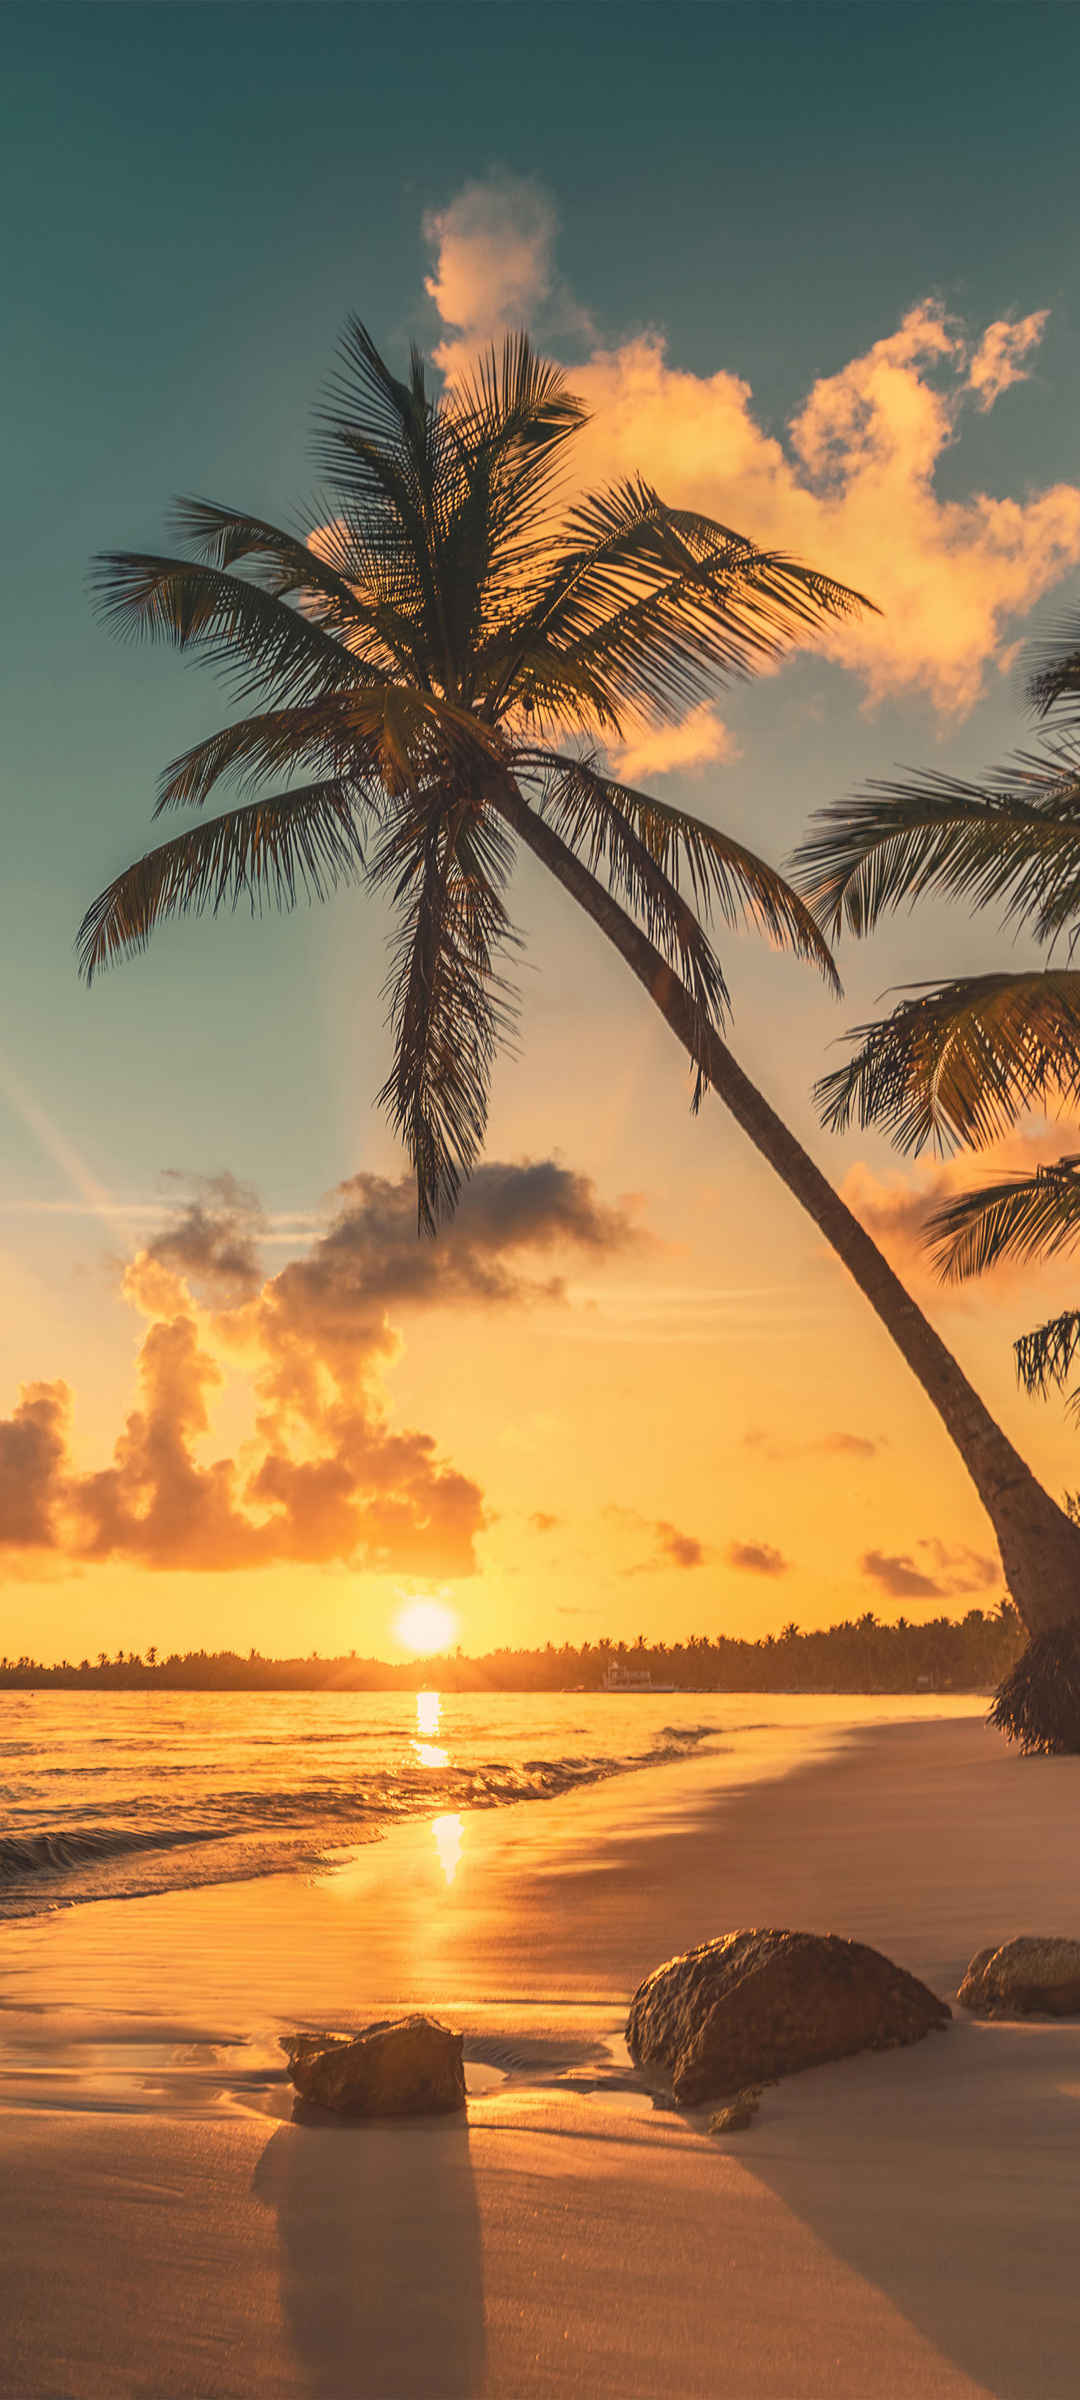 海边 沙滩 日落 夕阳 椰树 风景手机图片-